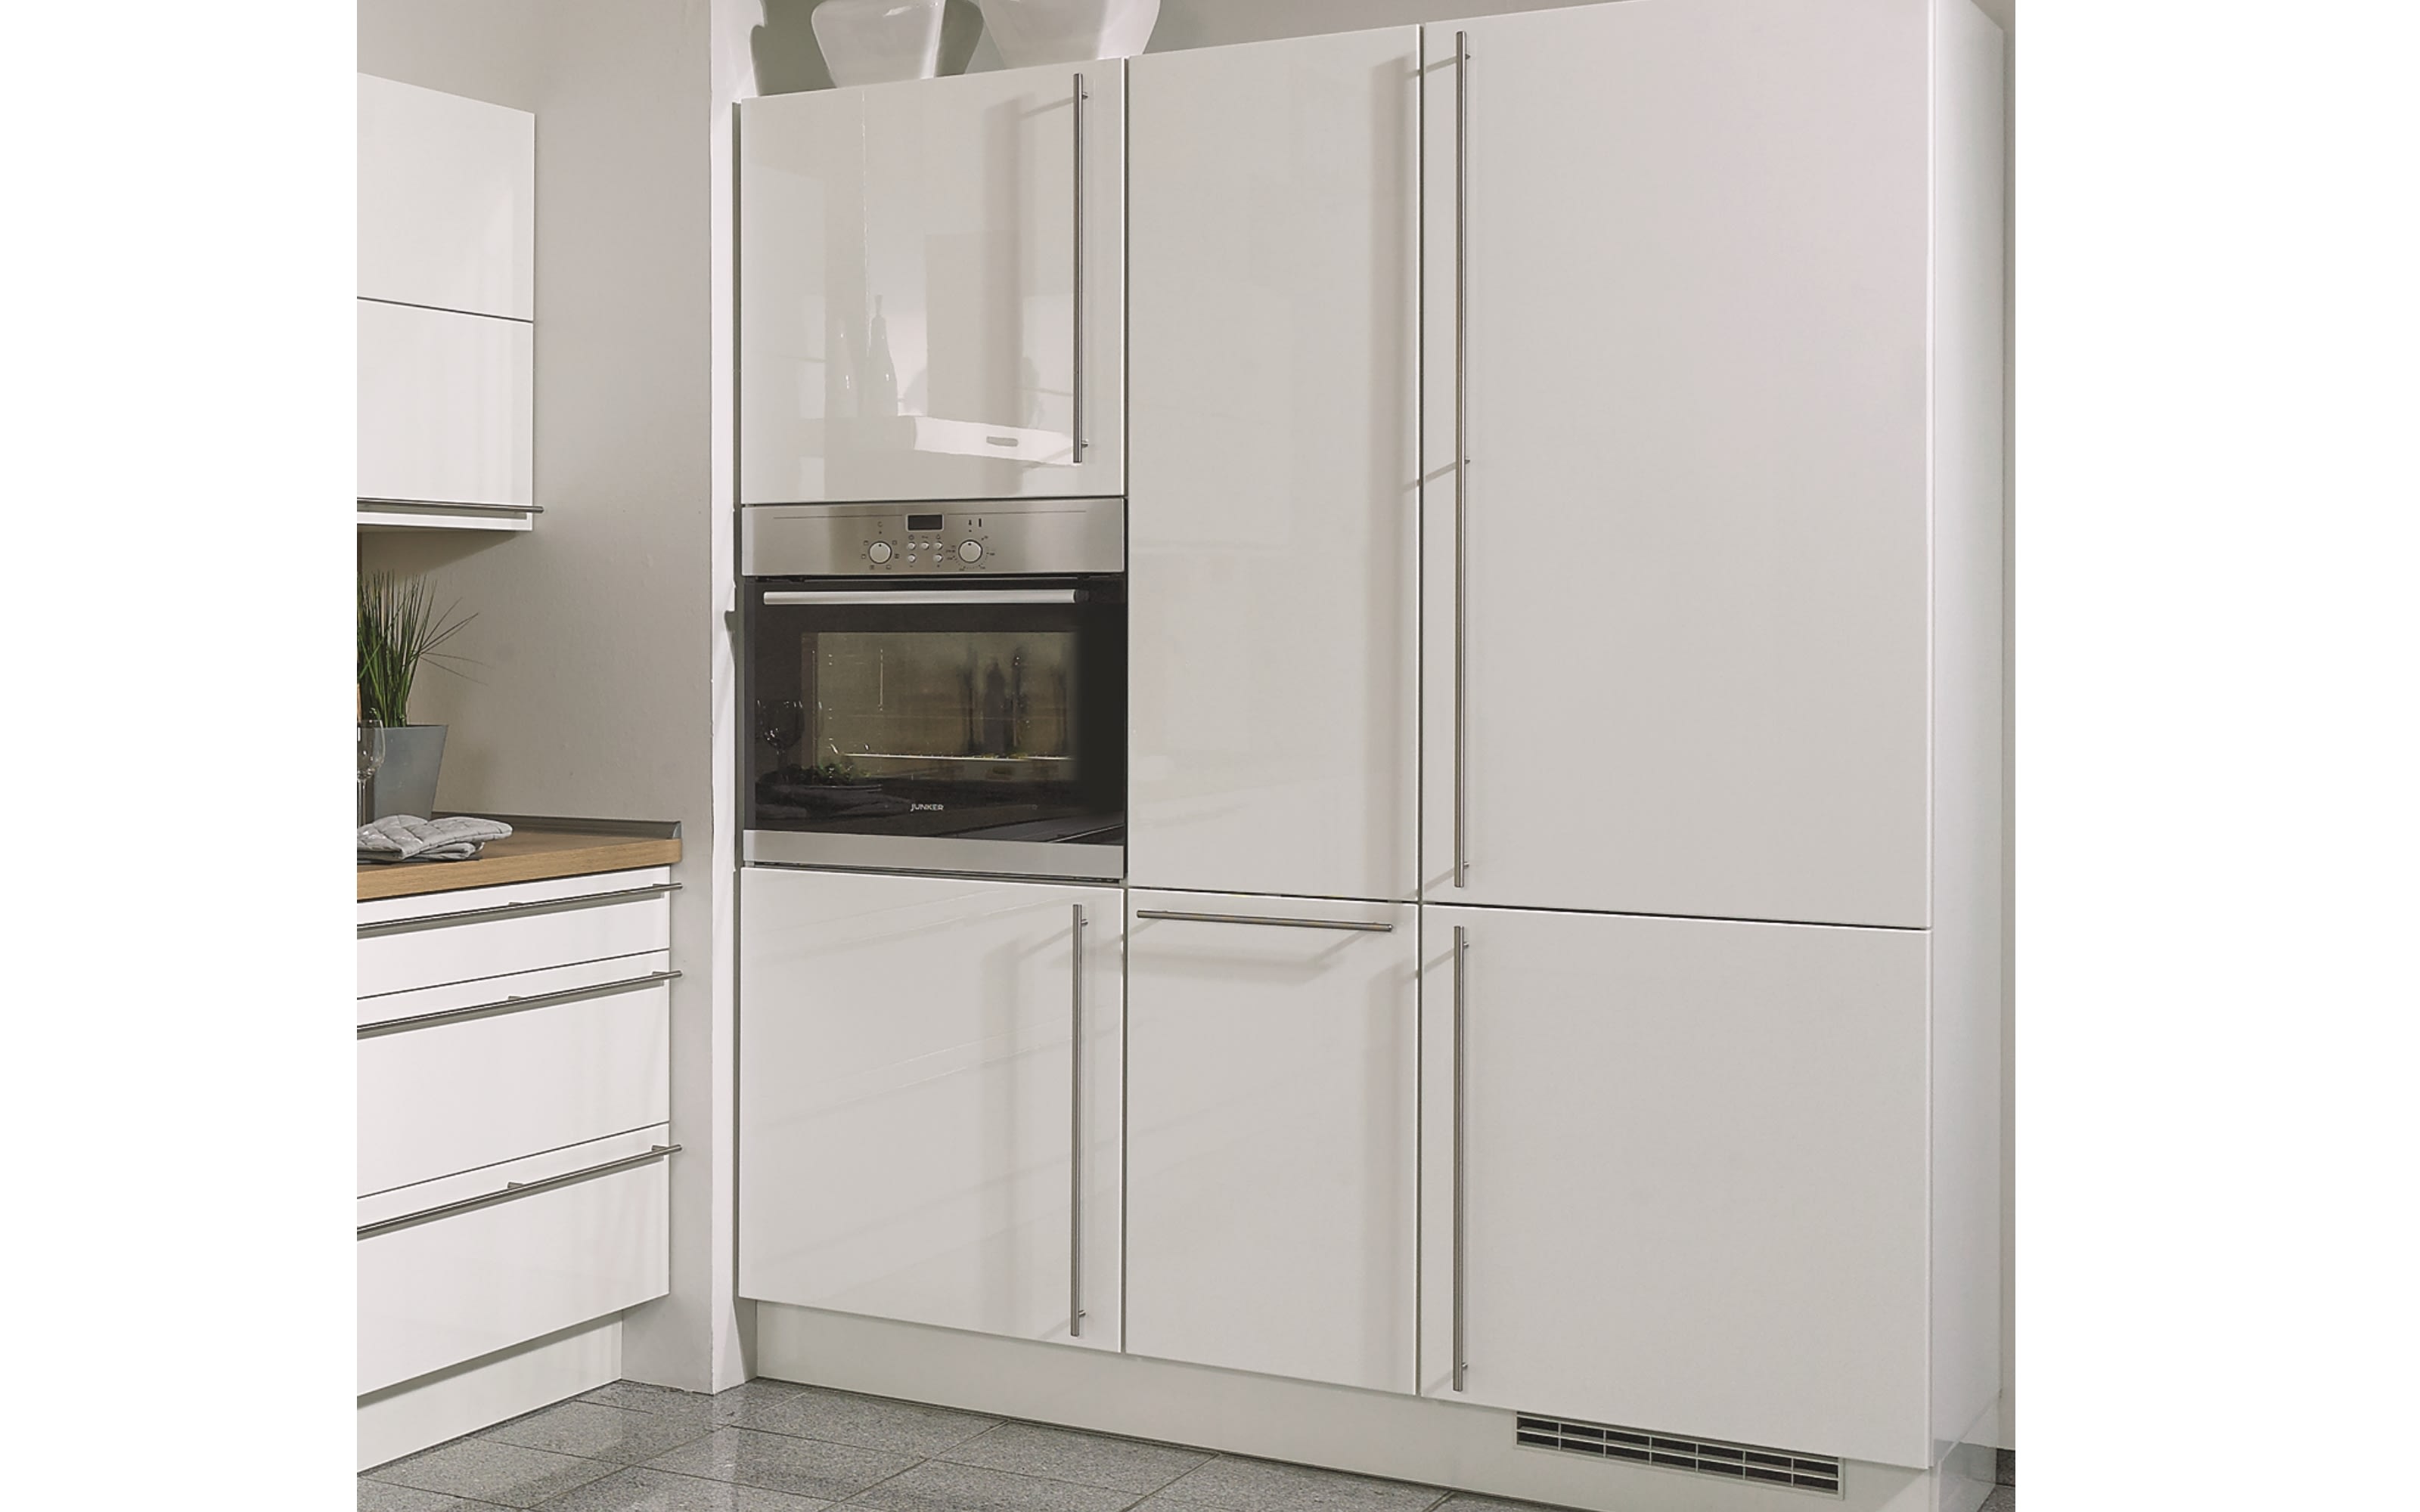 Einbauküche Lux, weiß Lack hochglanz, inklusive Siemens Elektrogeräte